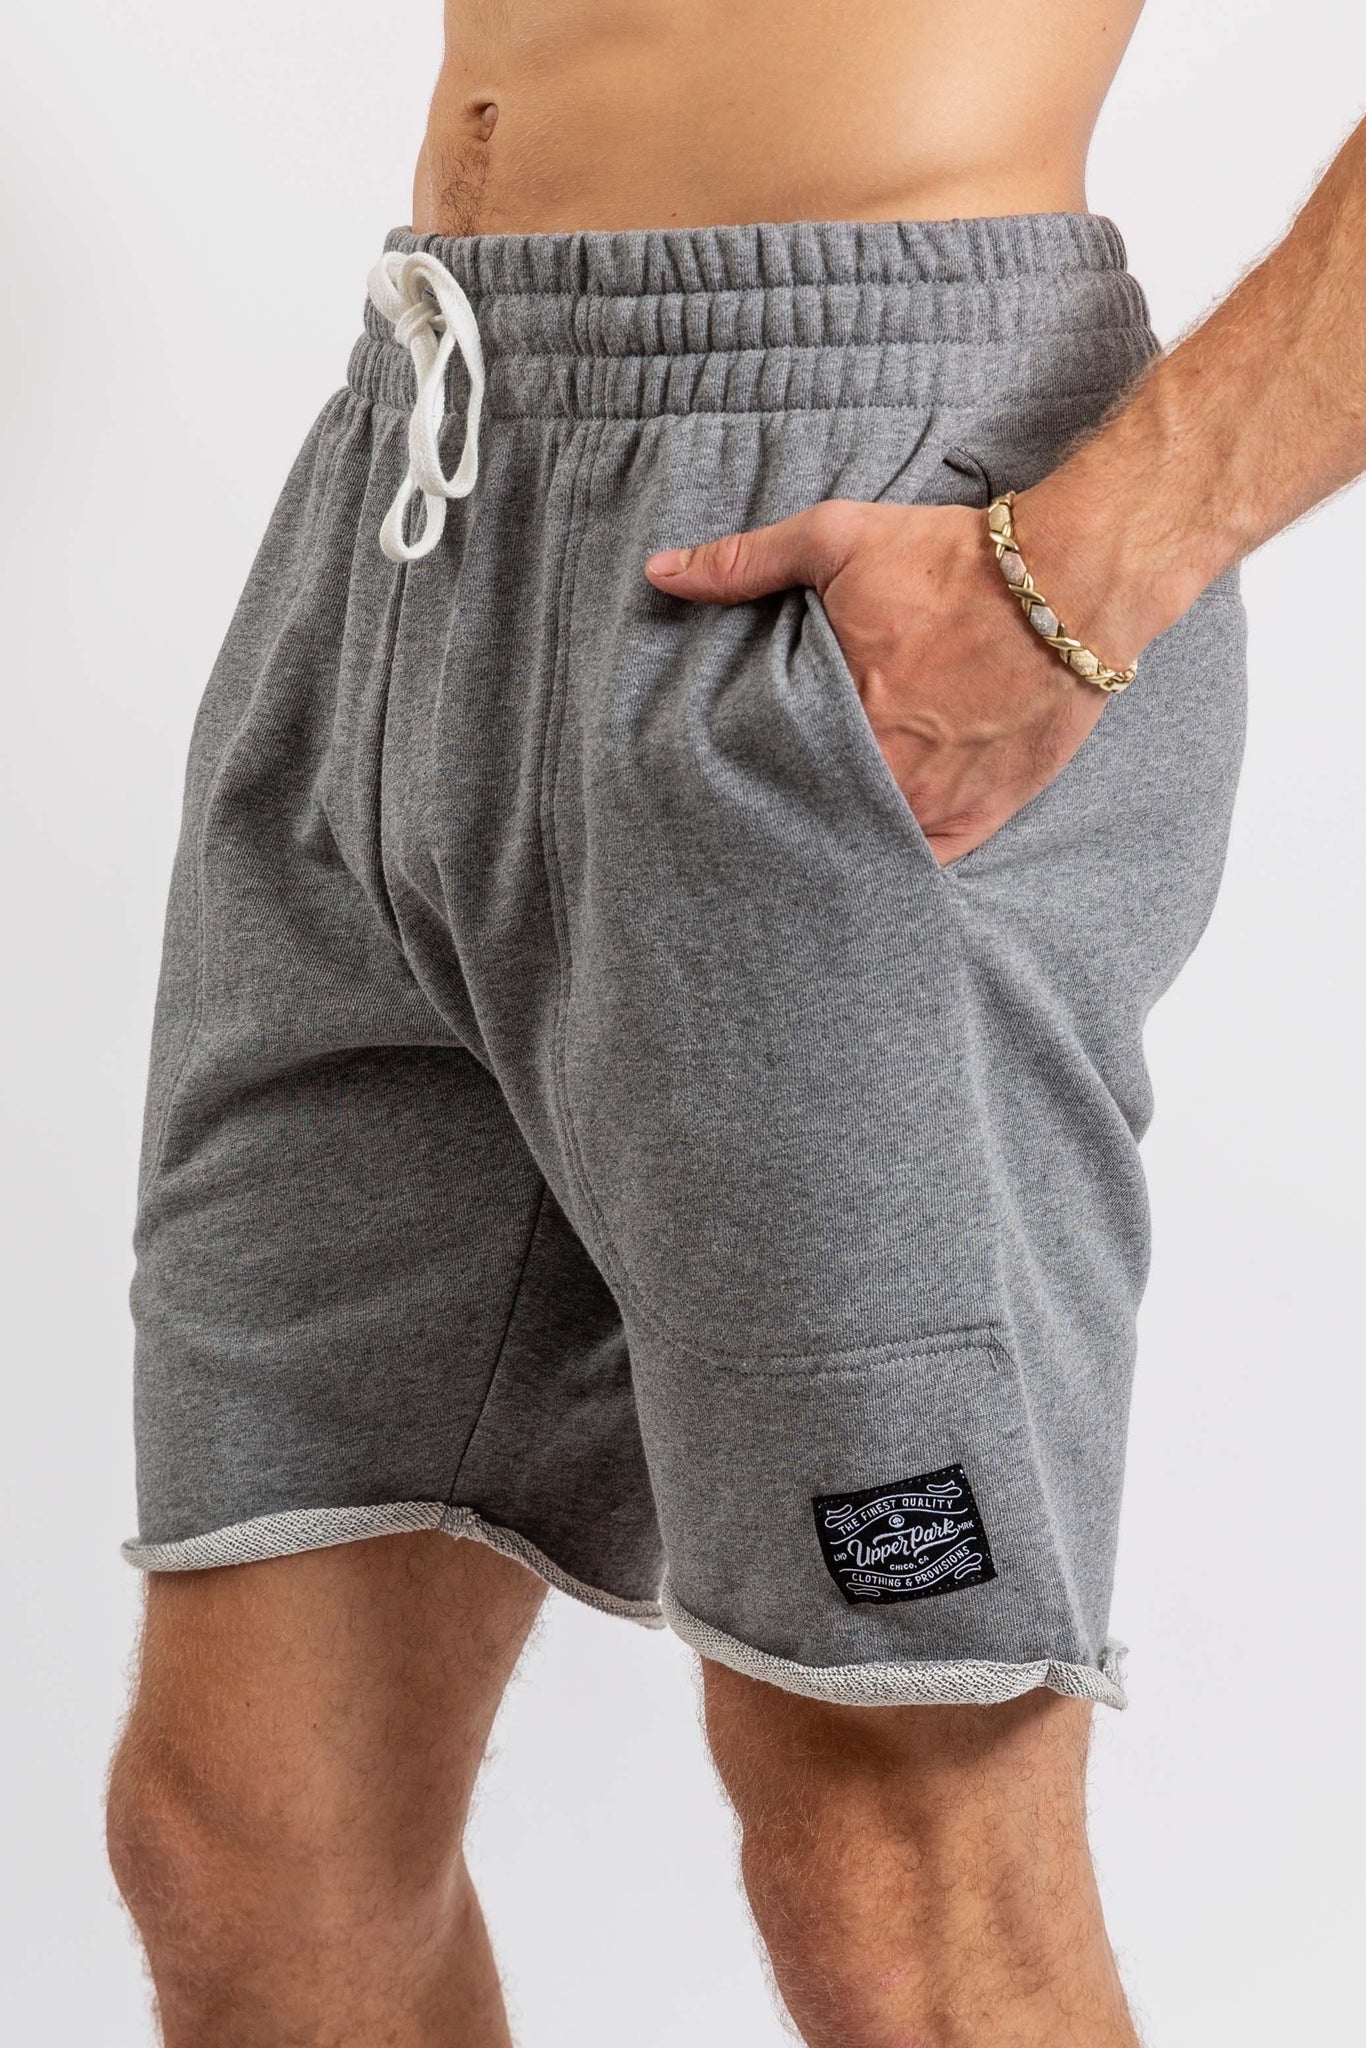 sweet shorts for men